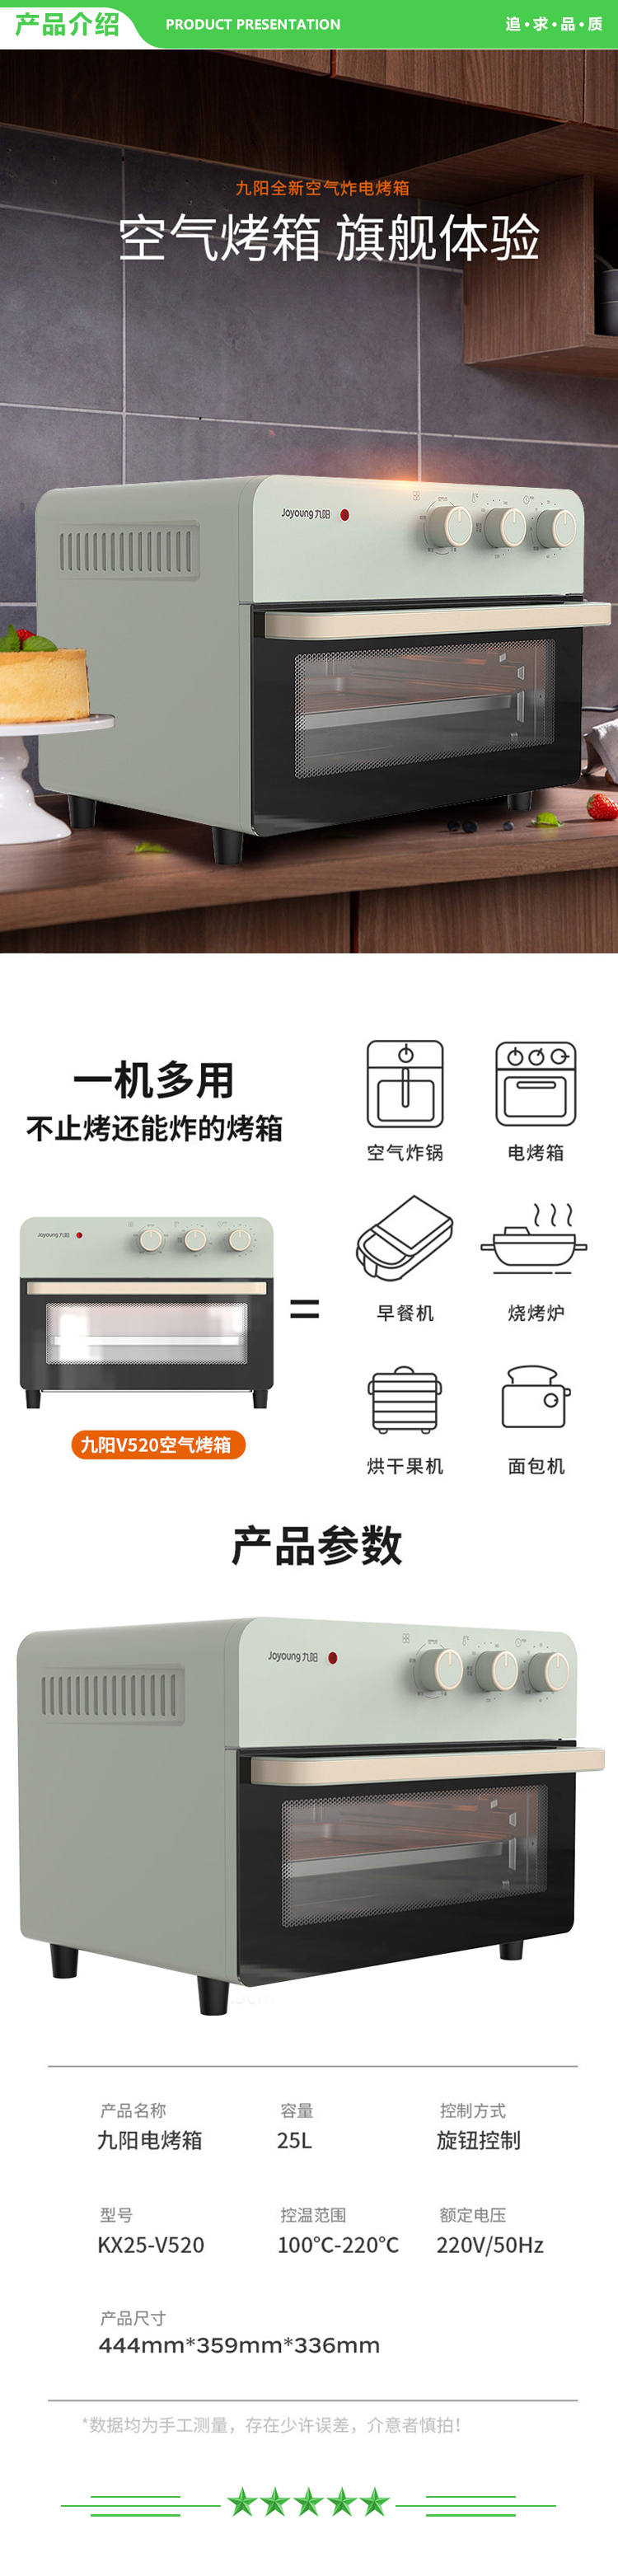 九阳 Joyoung KX25-V520 电烤箱25L容量.jpg